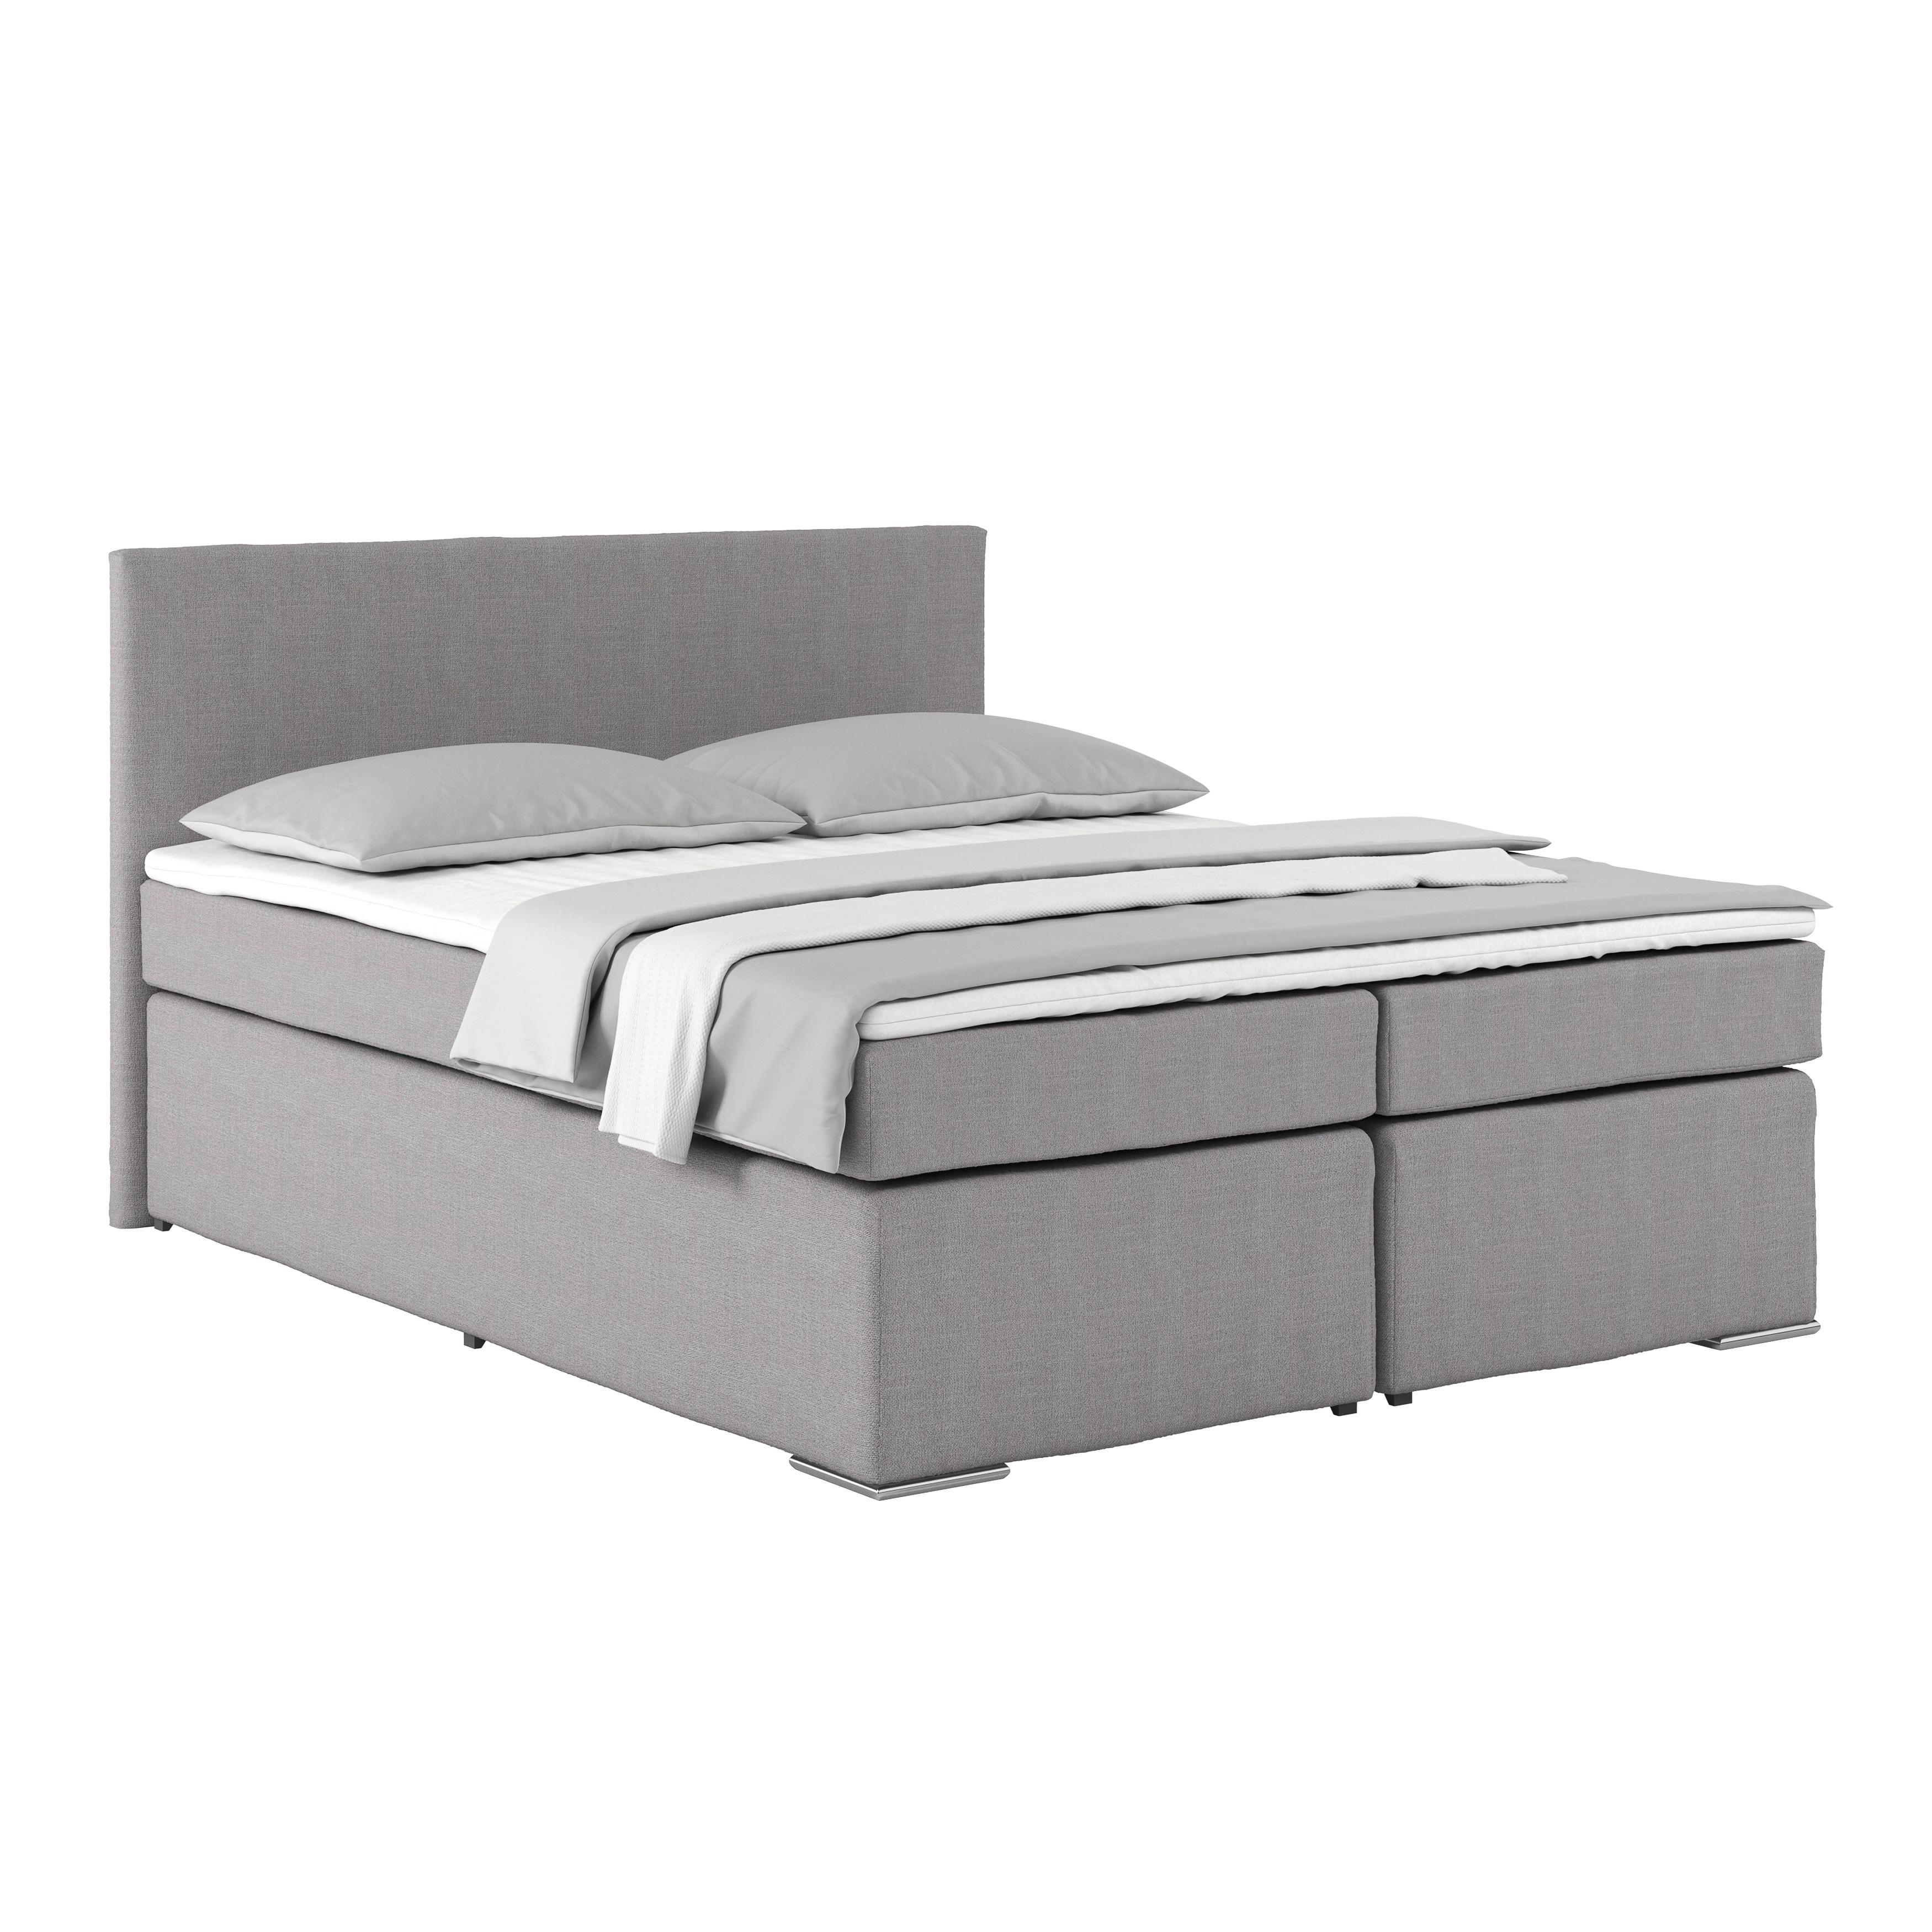 Manželská posteľ Nero, 160x200, béžovo sivá - sivá/chrómová, Konvenčný, kov/textil (160/200cm)